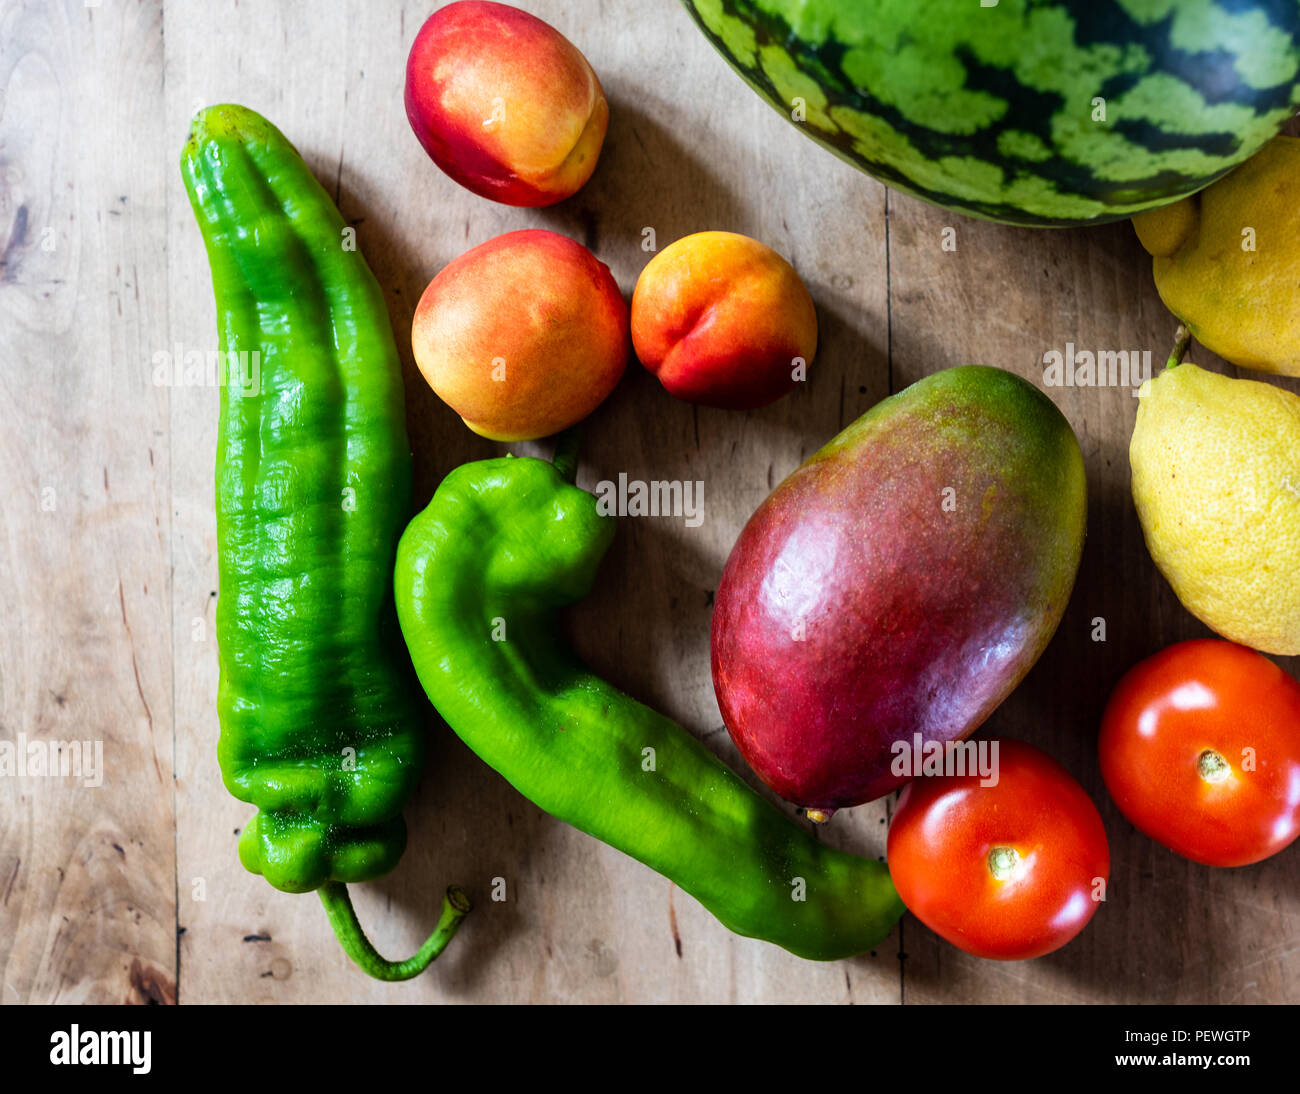 Les fruits et légumes frais sur la table en bois Banque D'Images